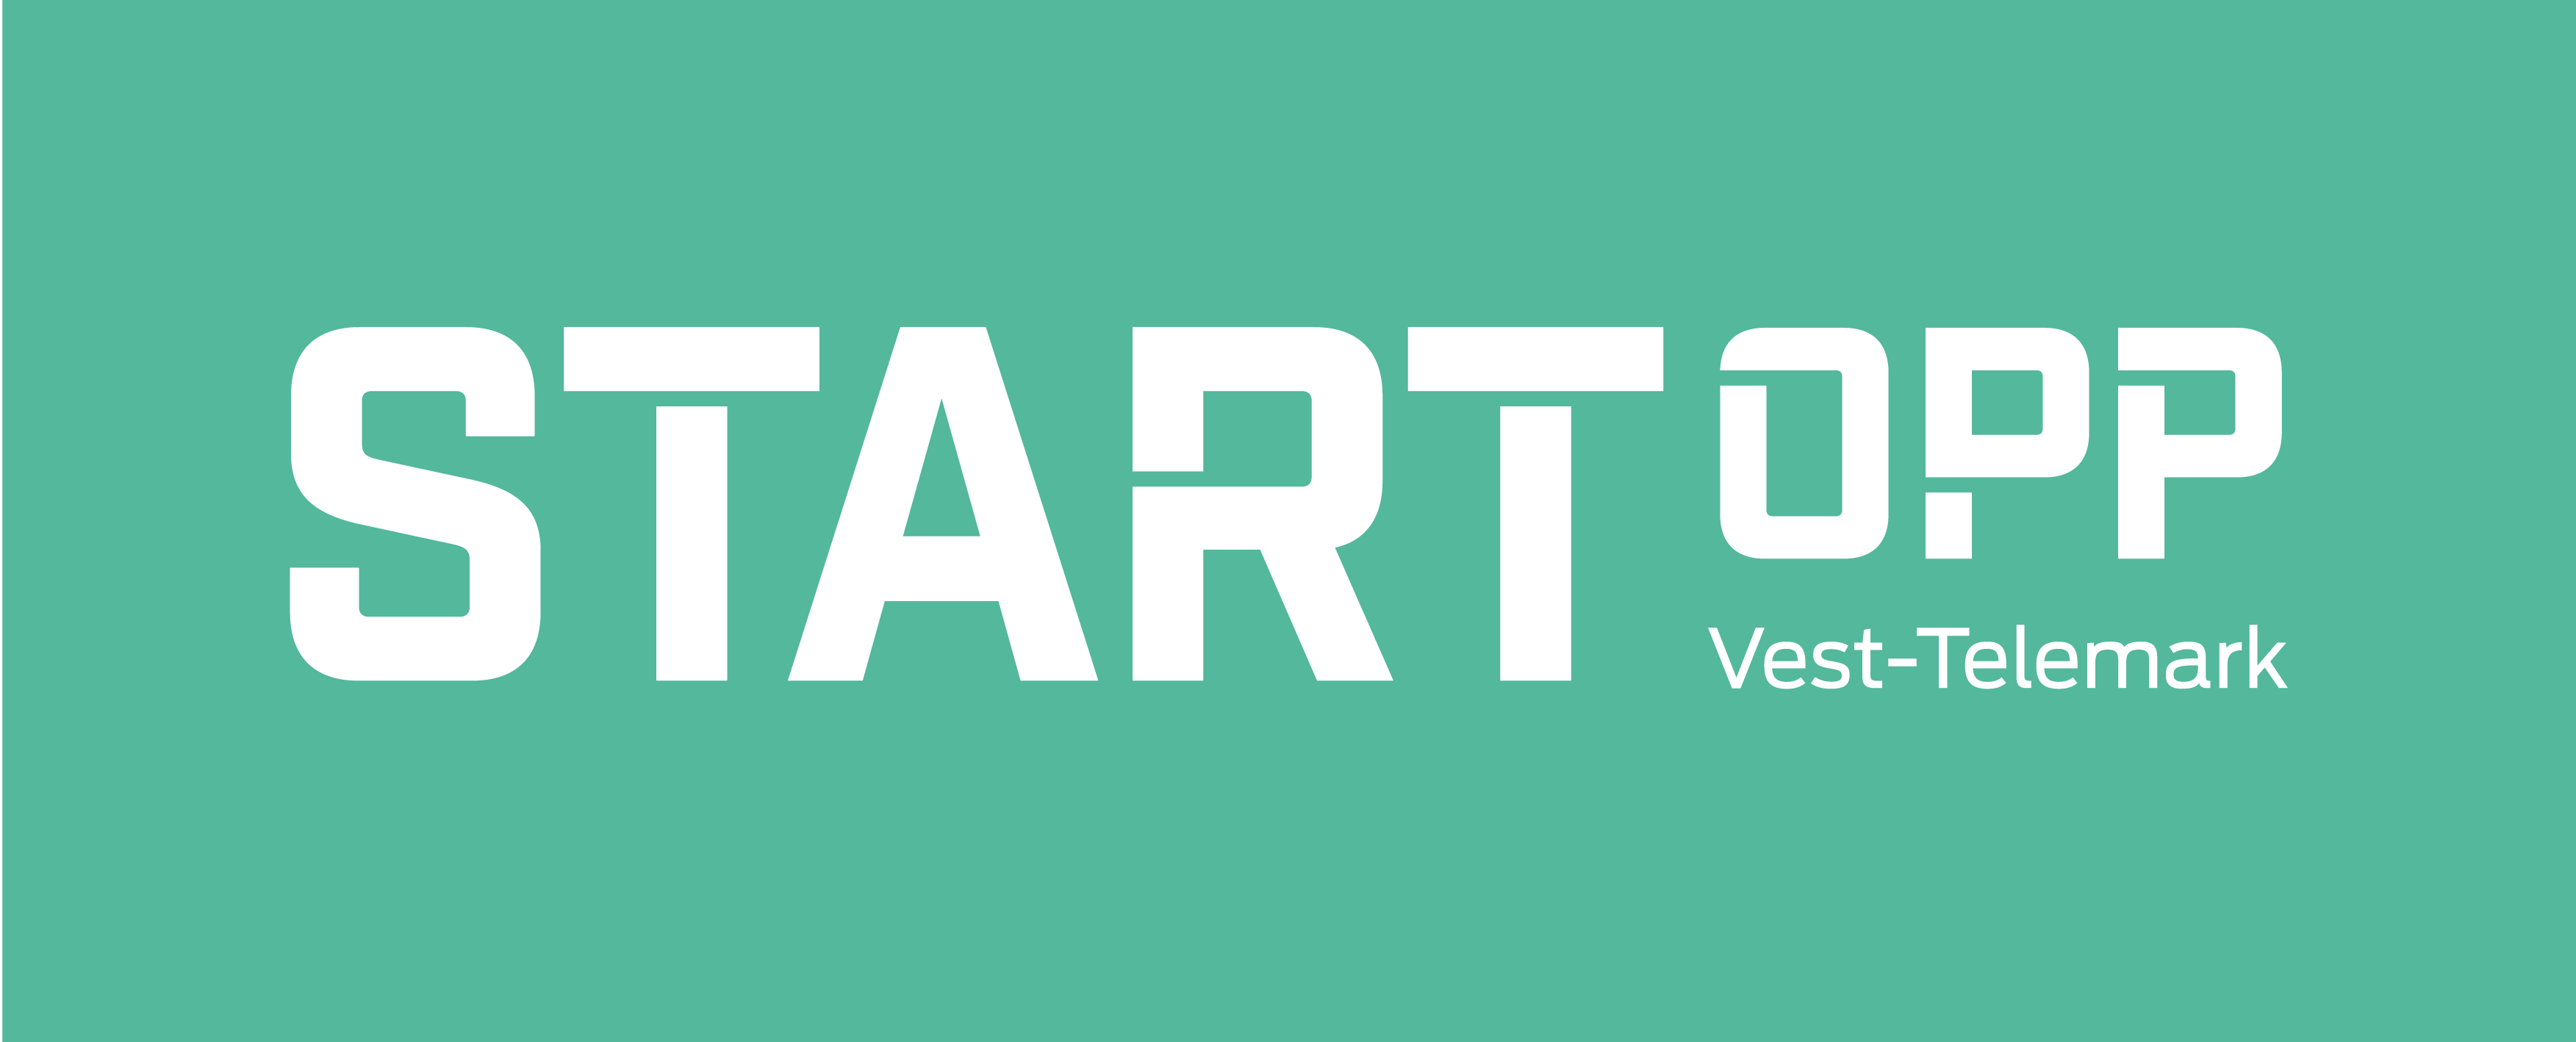 StartOpp_logo_Rgb_3.png